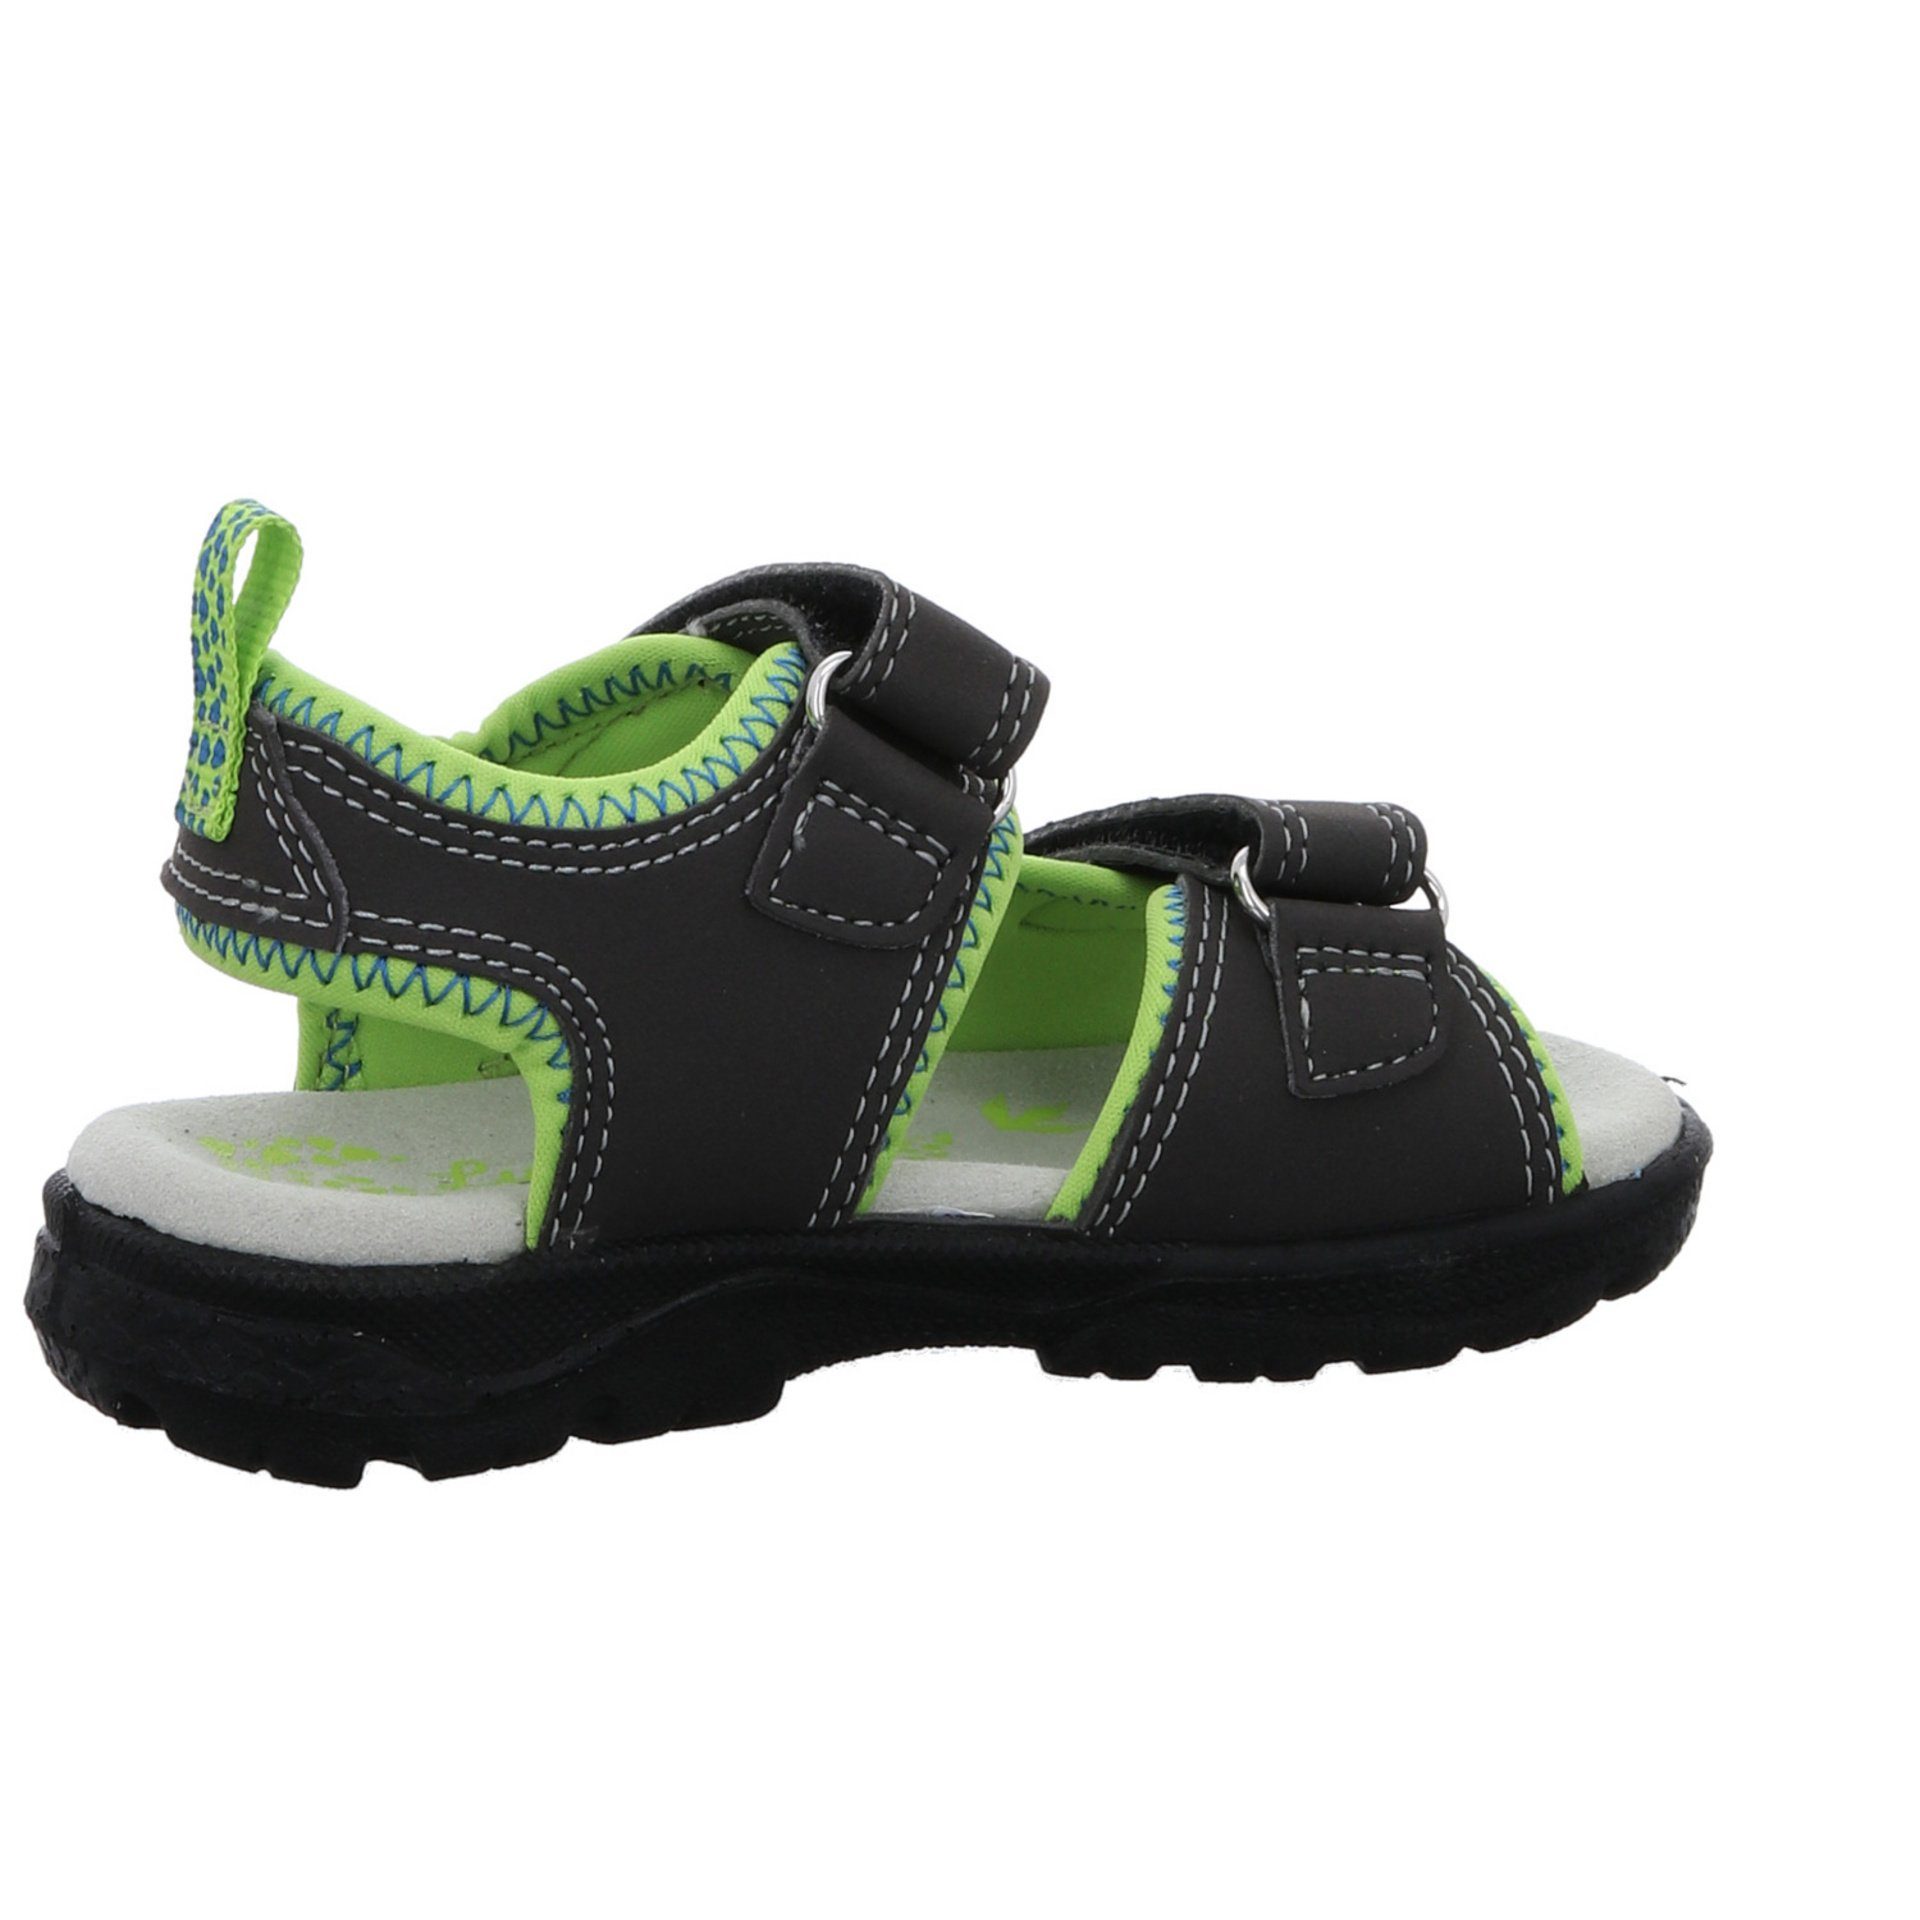 Sandale Sandalen Schuhe Jungen Synthetikkombination Lurchi Kelto Kinderschuhe Sandale